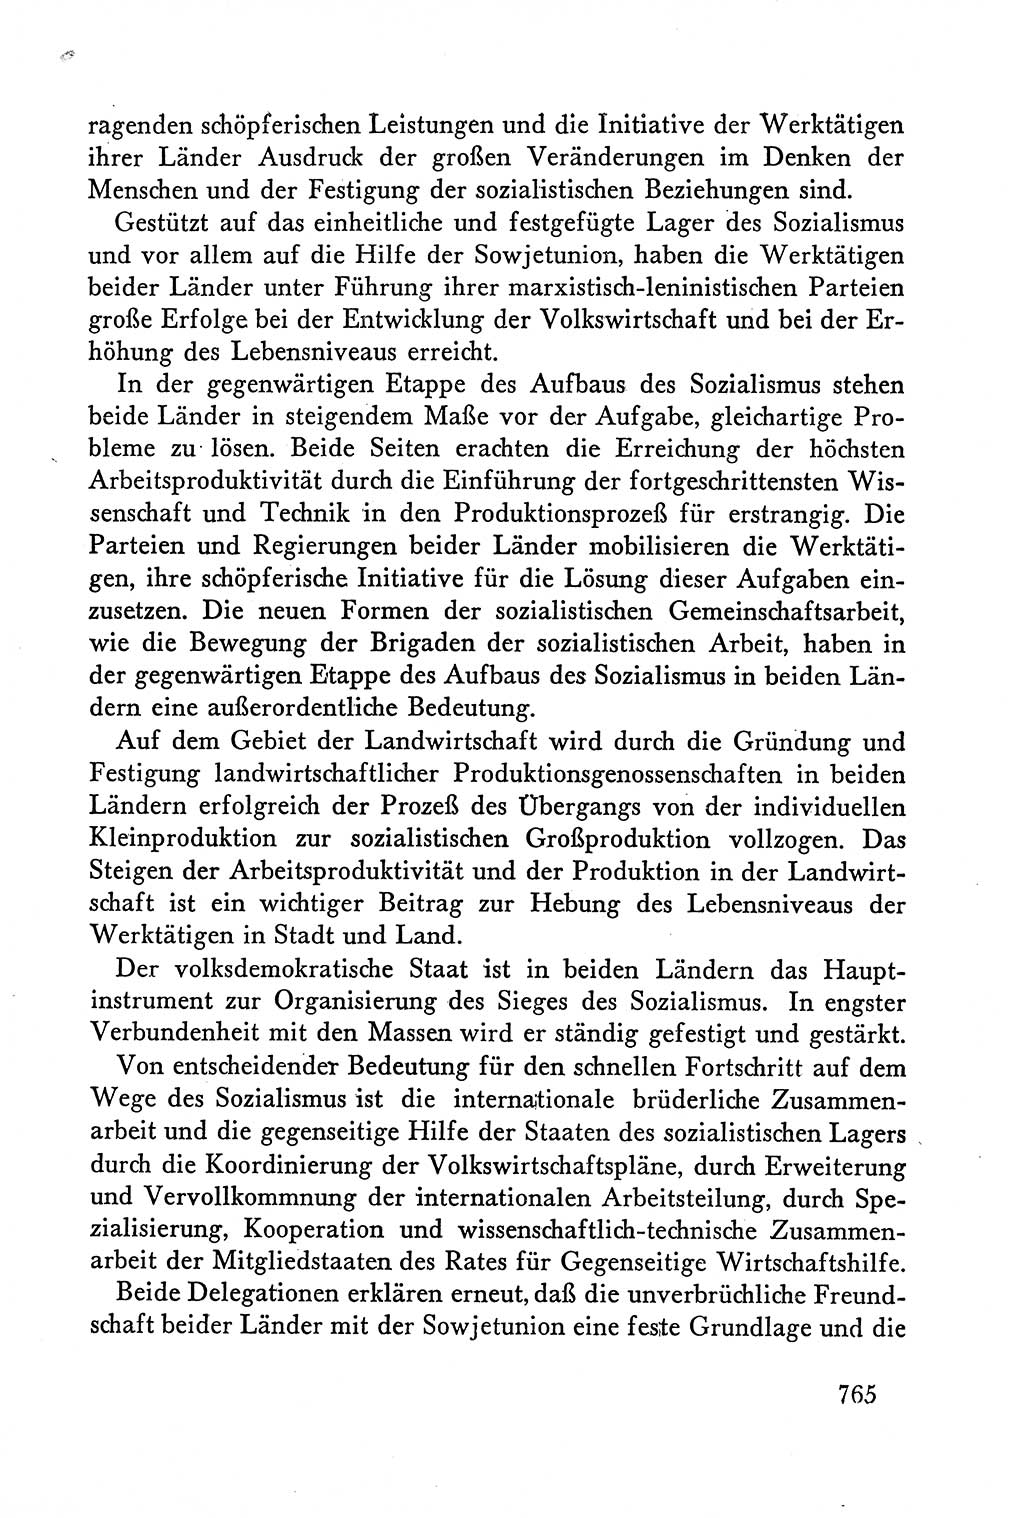 Dokumente der Sozialistischen Einheitspartei Deutschlands (SED) [Deutsche Demokratische Republik (DDR)] 1958-1959, Seite 765 (Dok. SED DDR 1958-1959, S. 765)